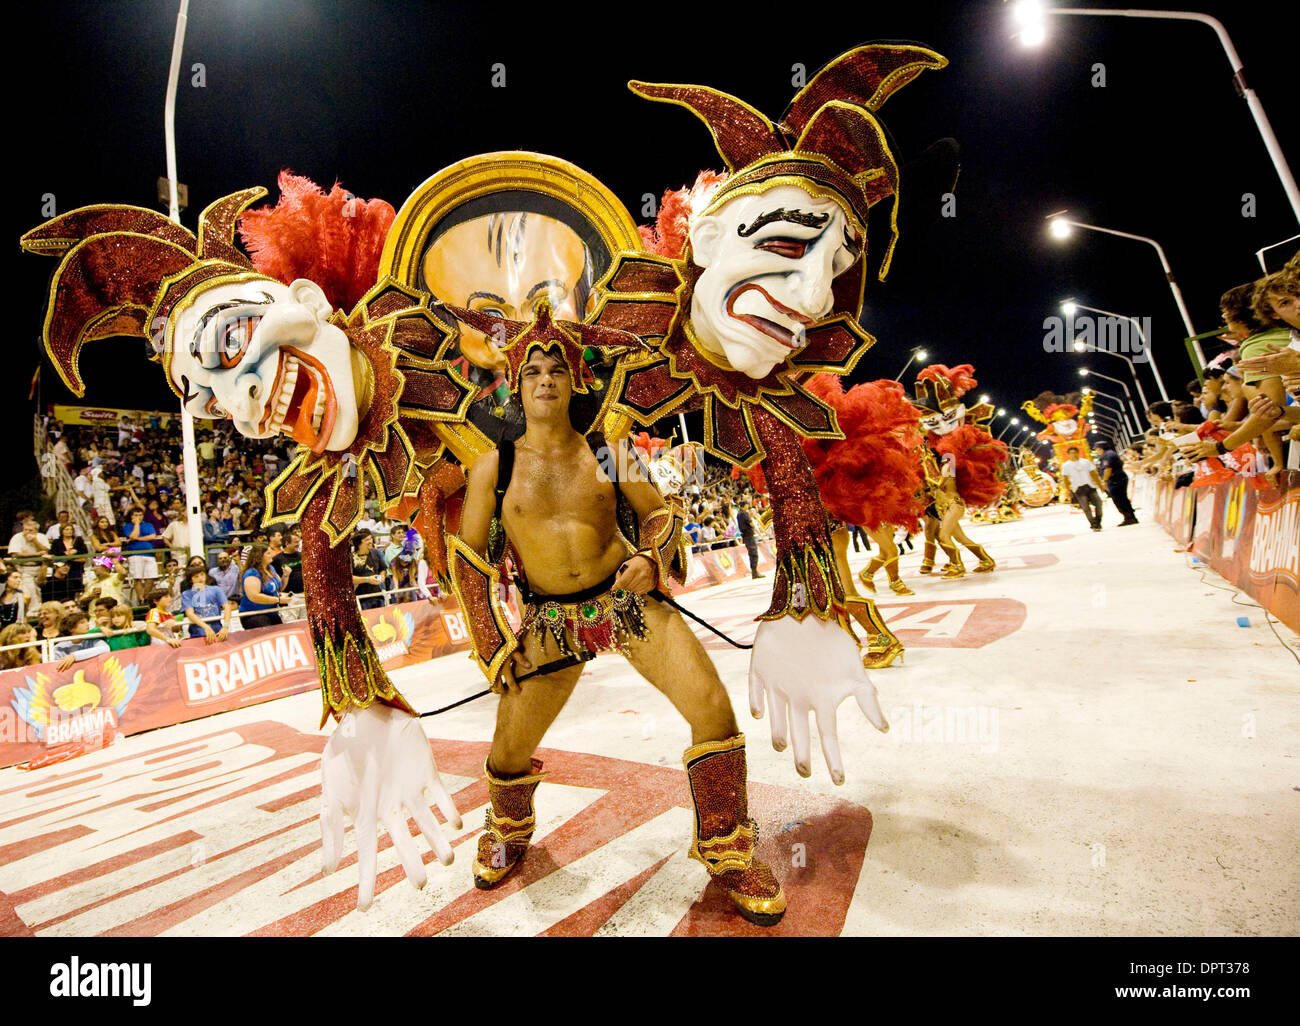 28 févr., 2009 - Buenos Aires, Buenos Aires, Argentine - grand costume avec jokers et masques de marquer le thème de papelitos pendant le carnaval dans le Corsodromo dans Buenos Aires, Argentine. (Crédit Image : © Caitlin M Kelly/ZUMA Press) Banque D'Images